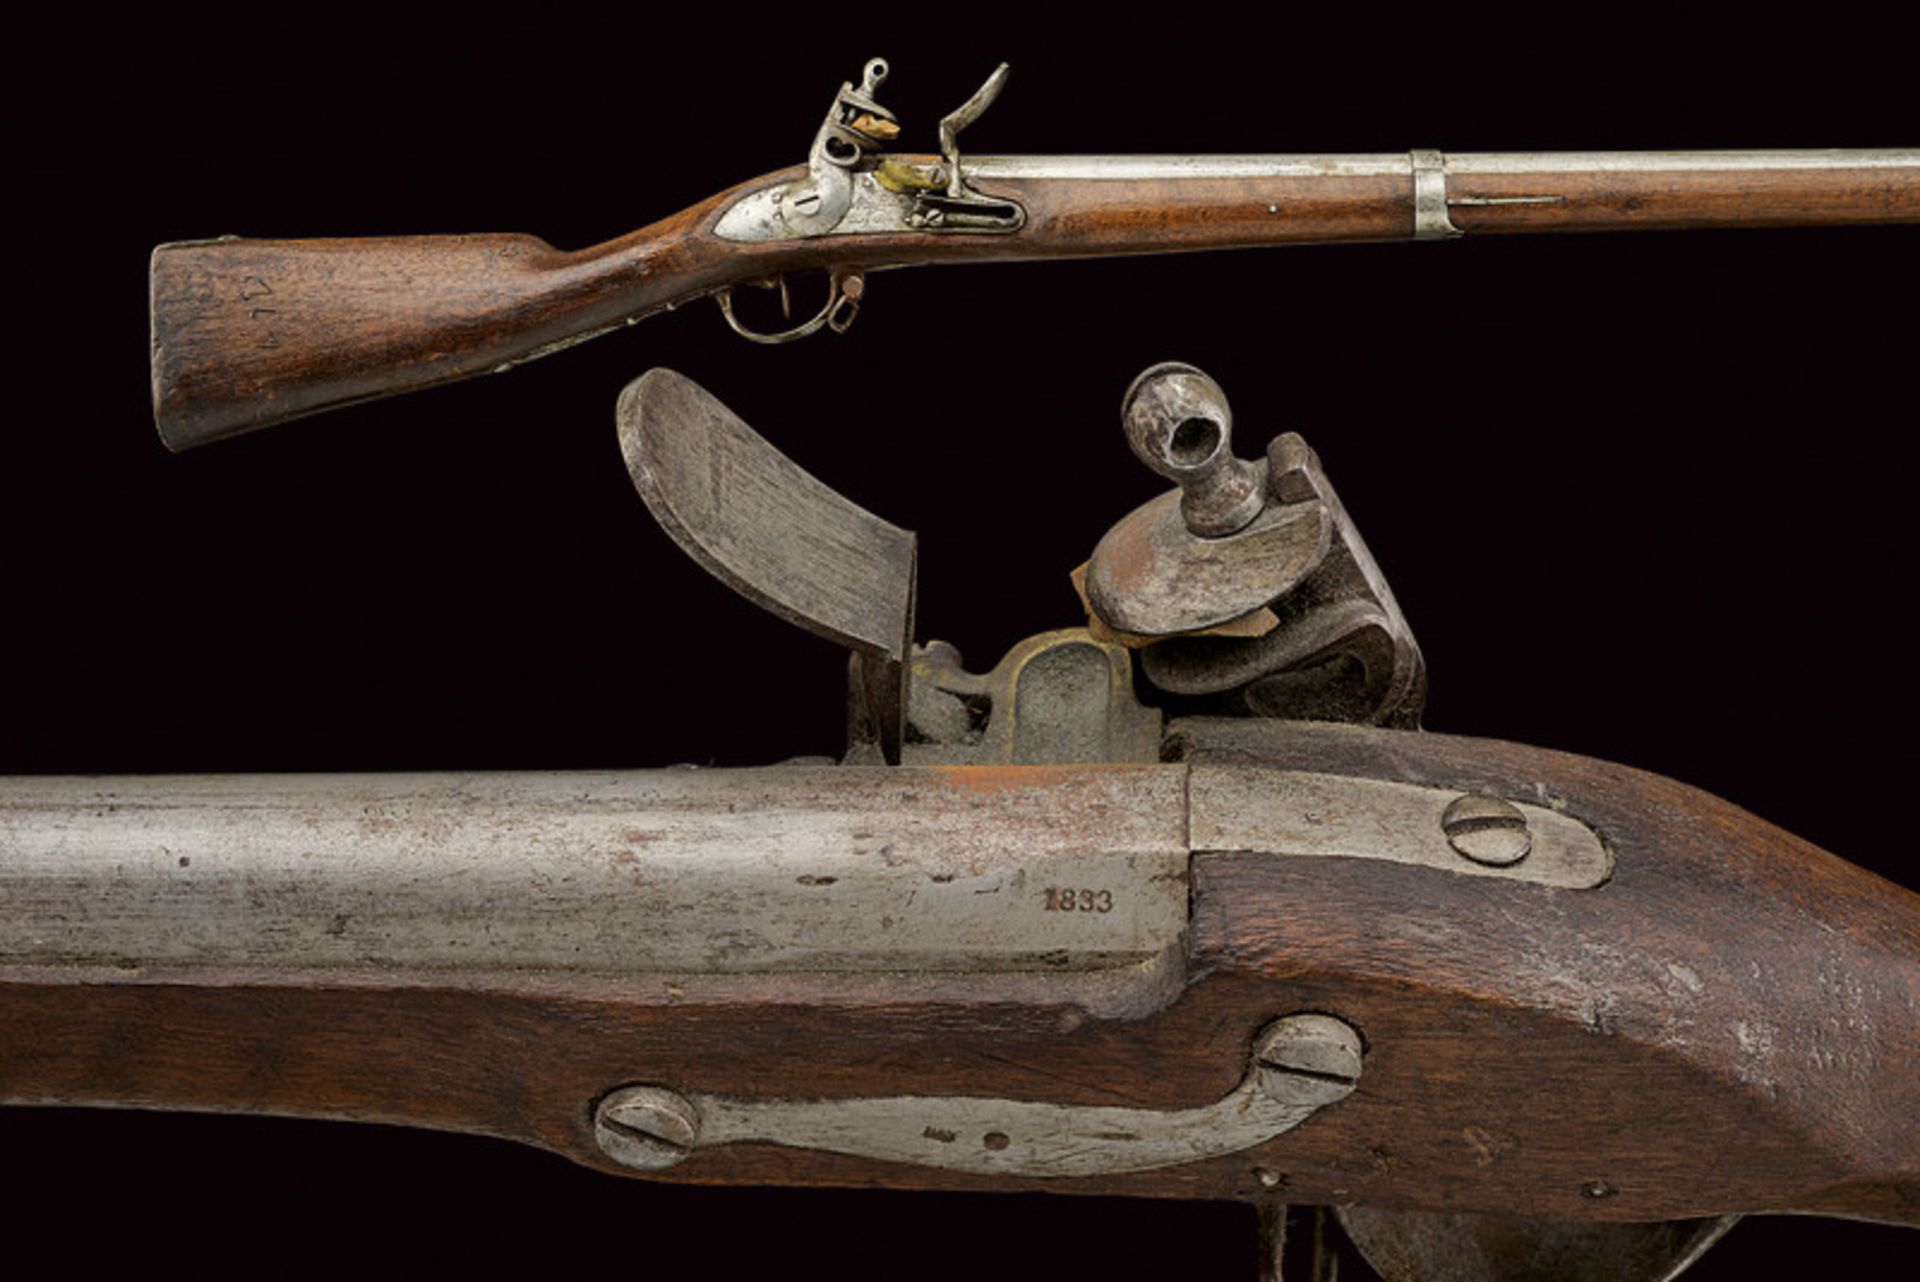 A flintlock gun